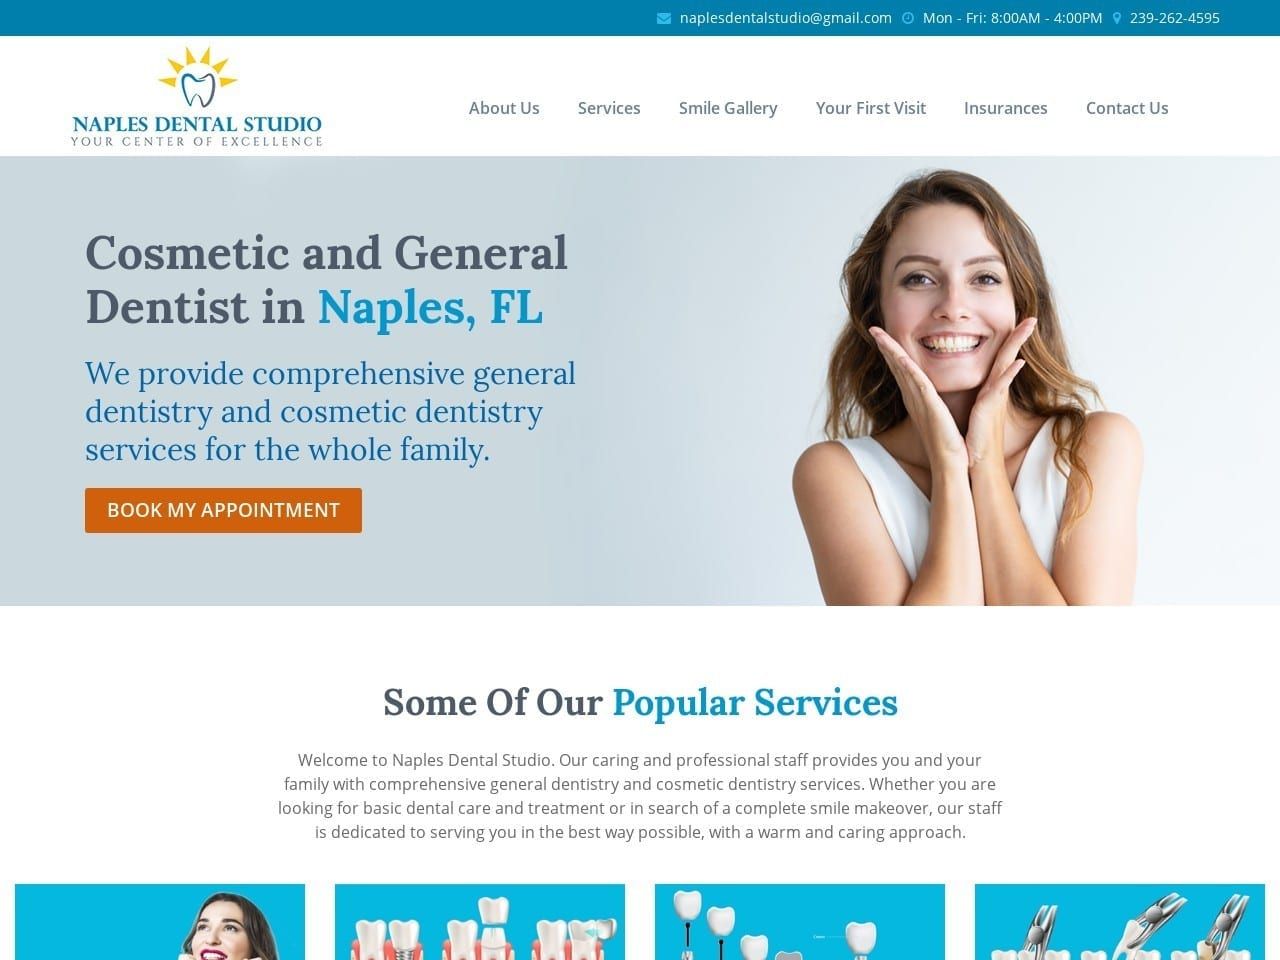 Naples Dental Studio Website Screenshot from naplesdentalstudio.com